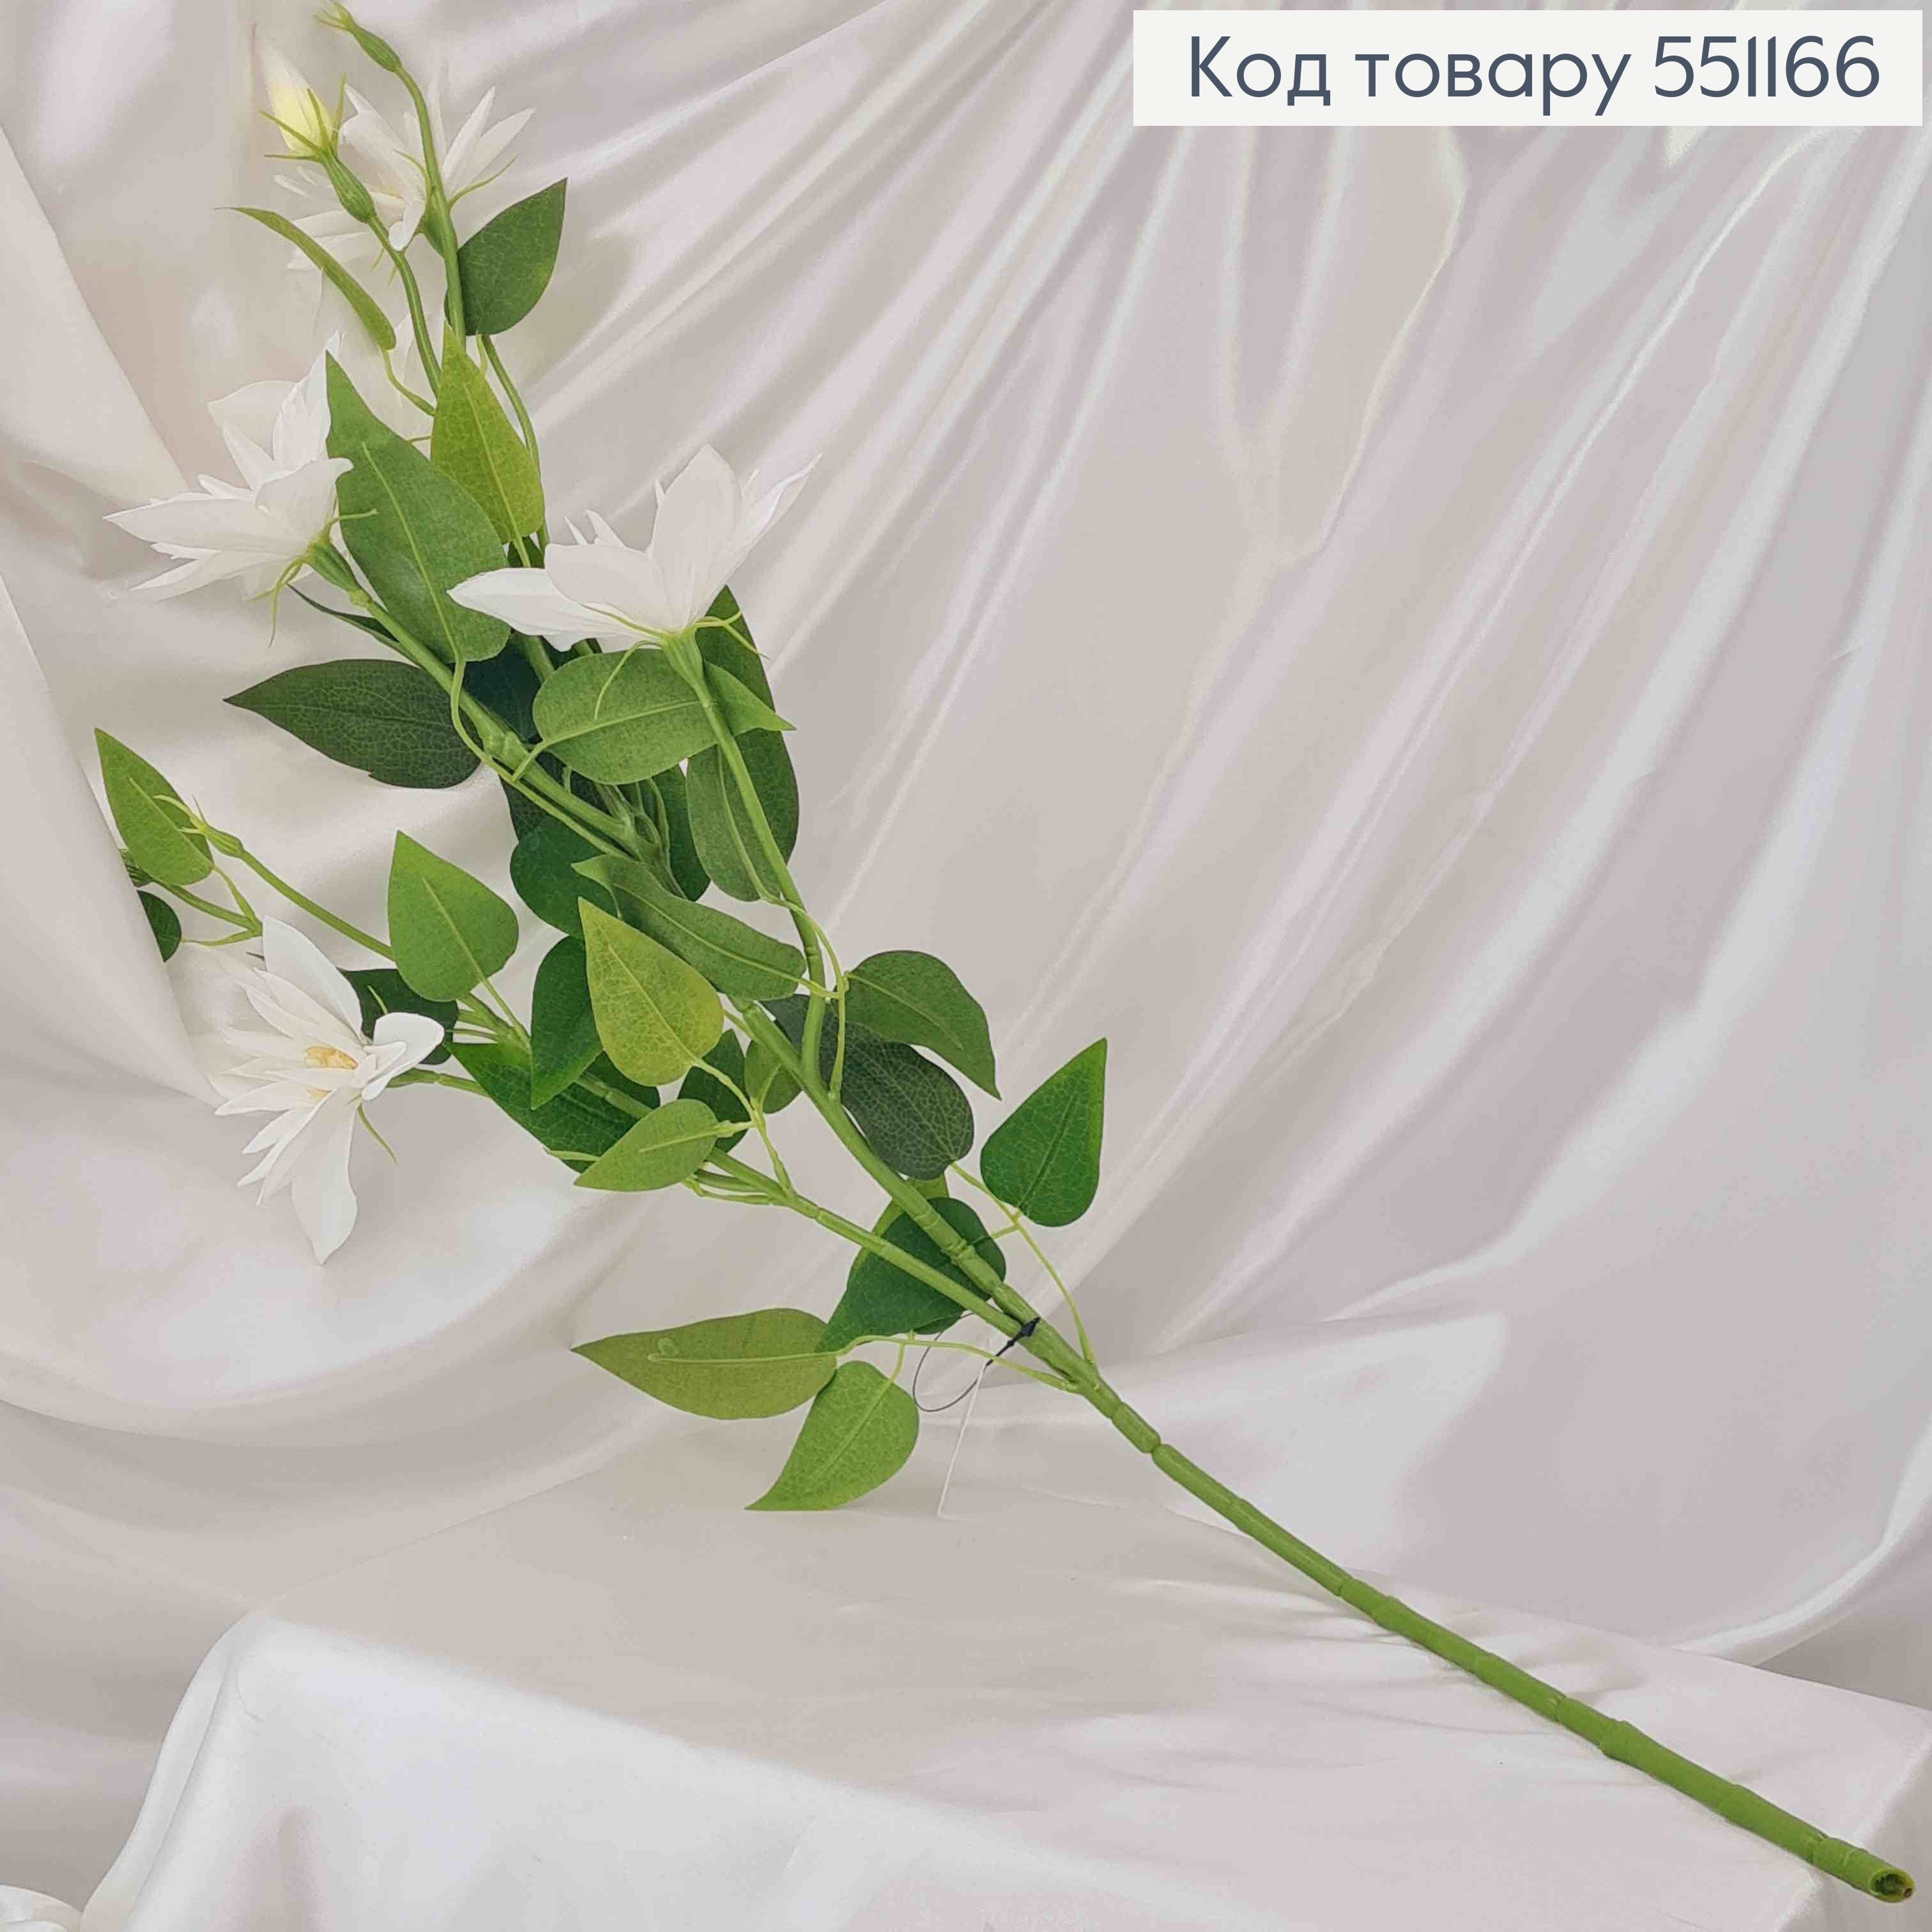 Искусственный цветок Клематиса, БЕЛАЯ, 5 цветков + 2 бутона, на металлическом стержне, 83см 551166 фото 2